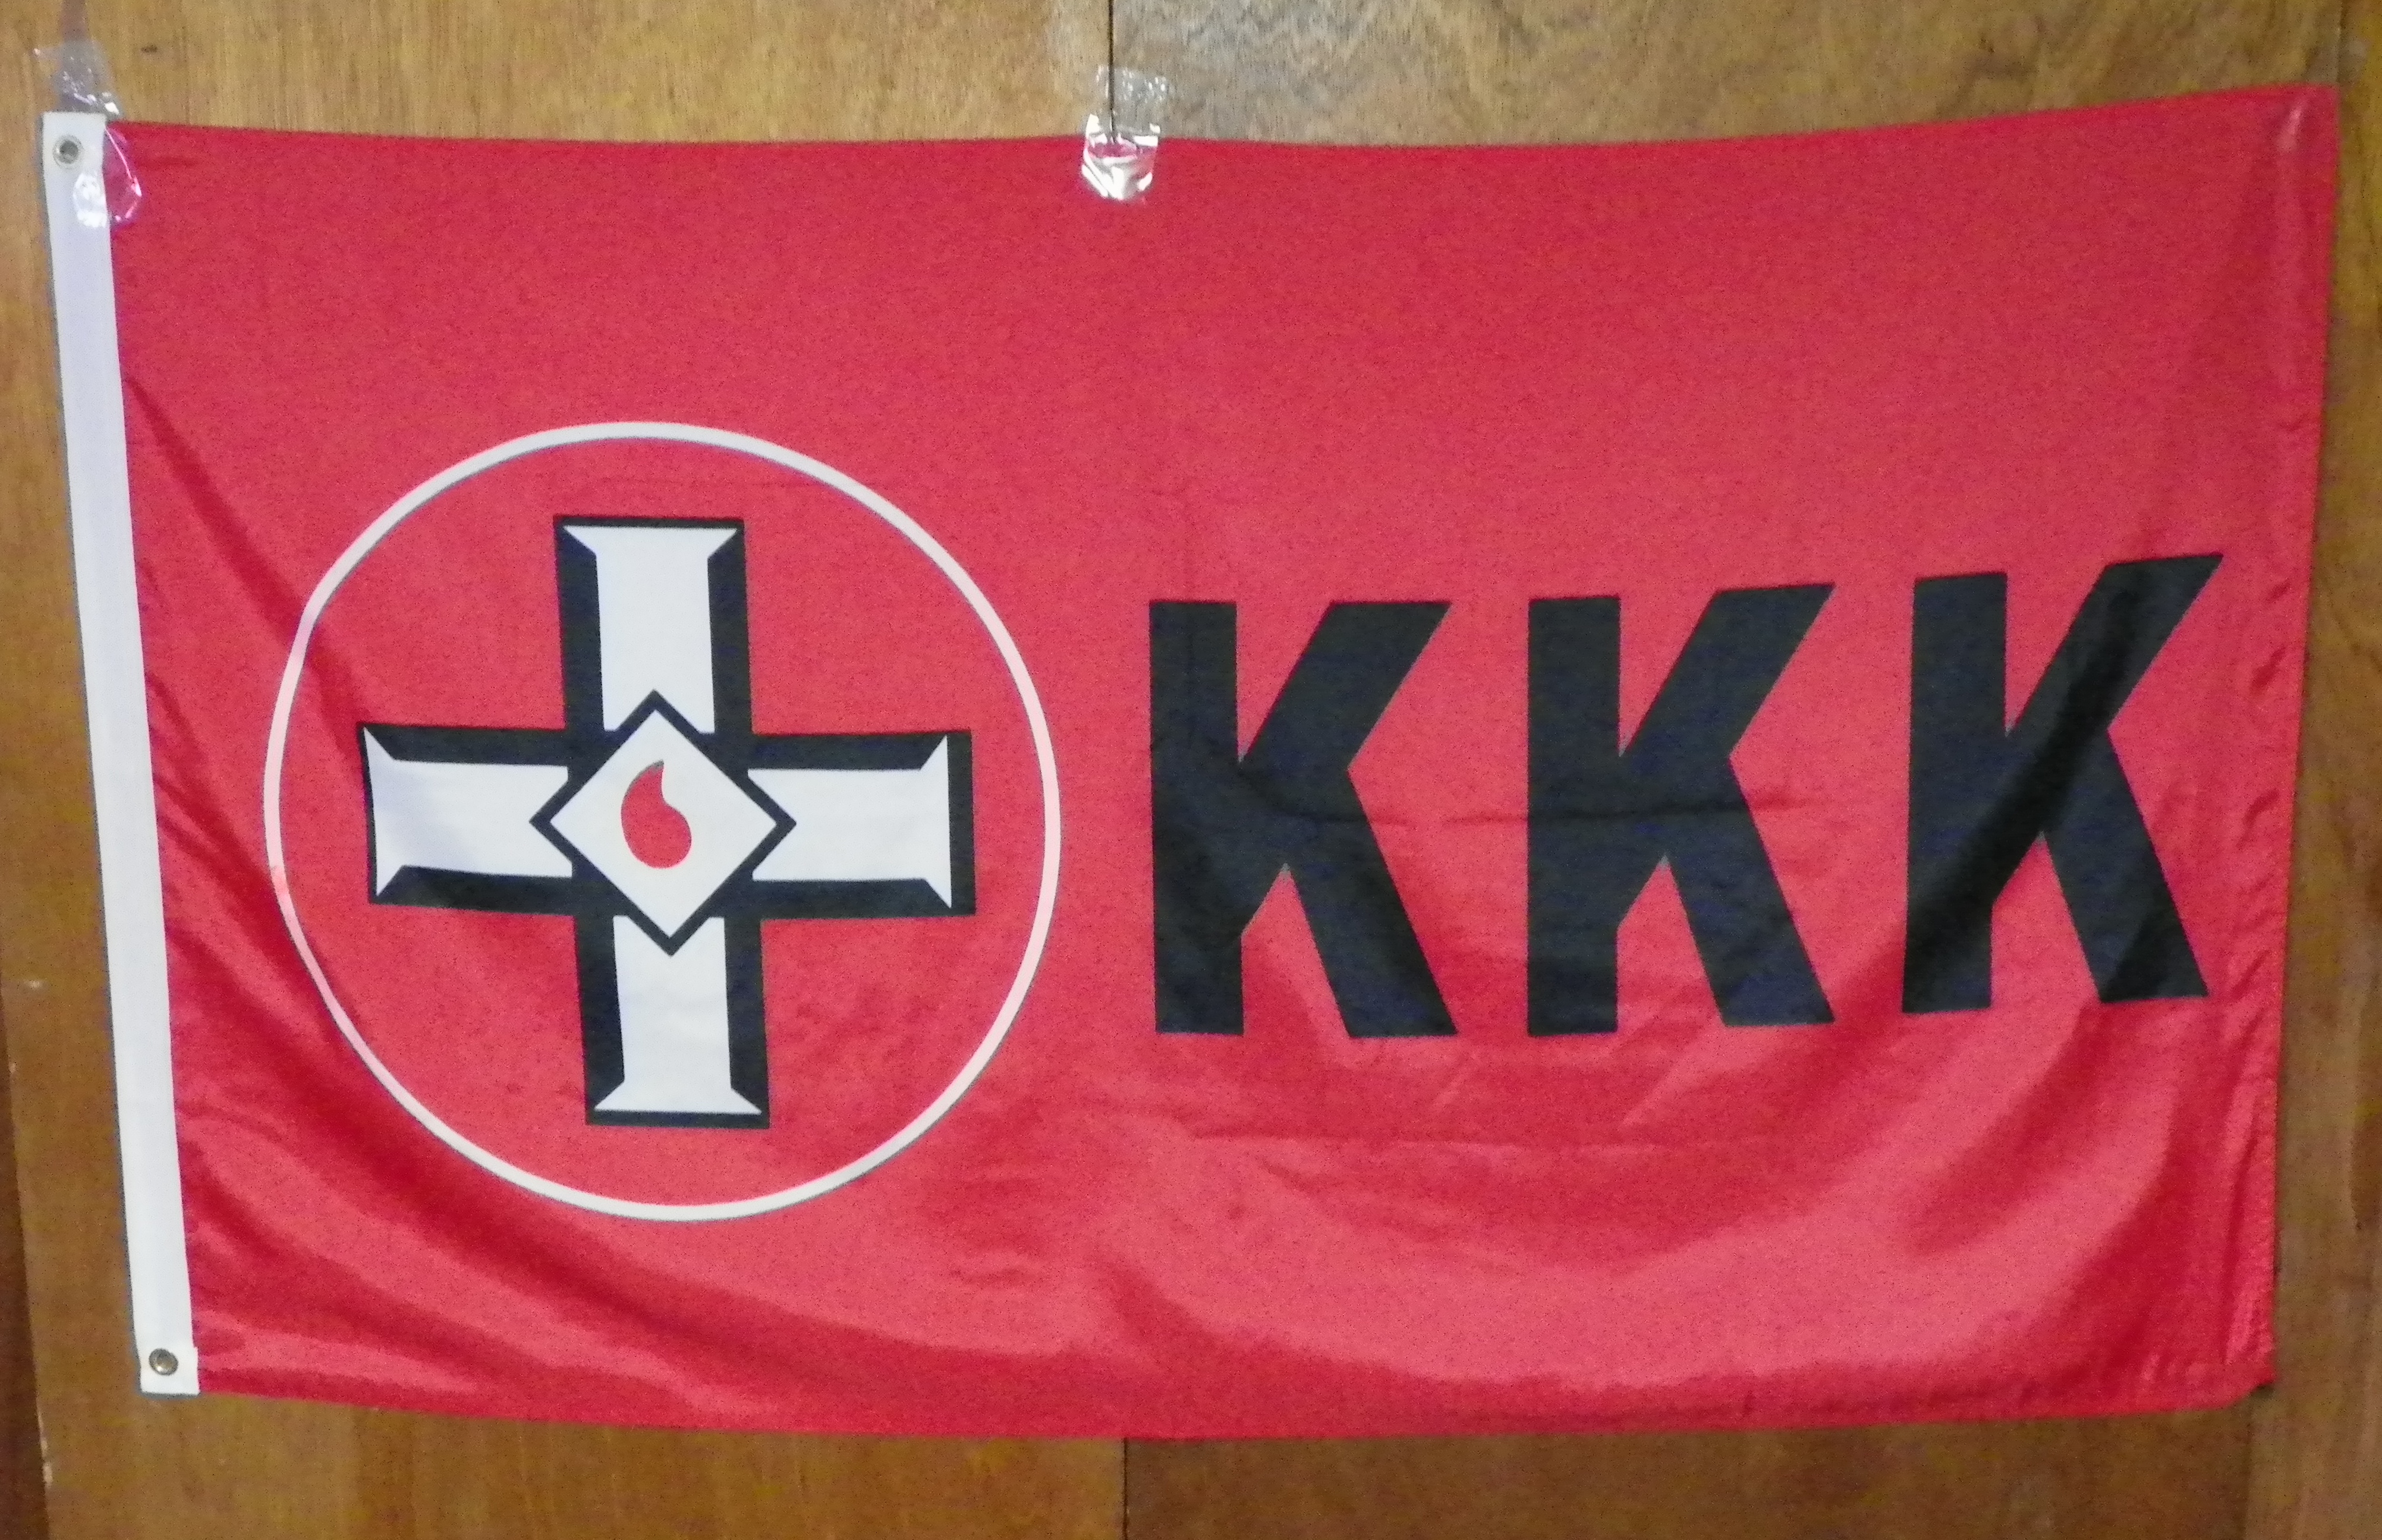 KKK klan items For Sale Page 1